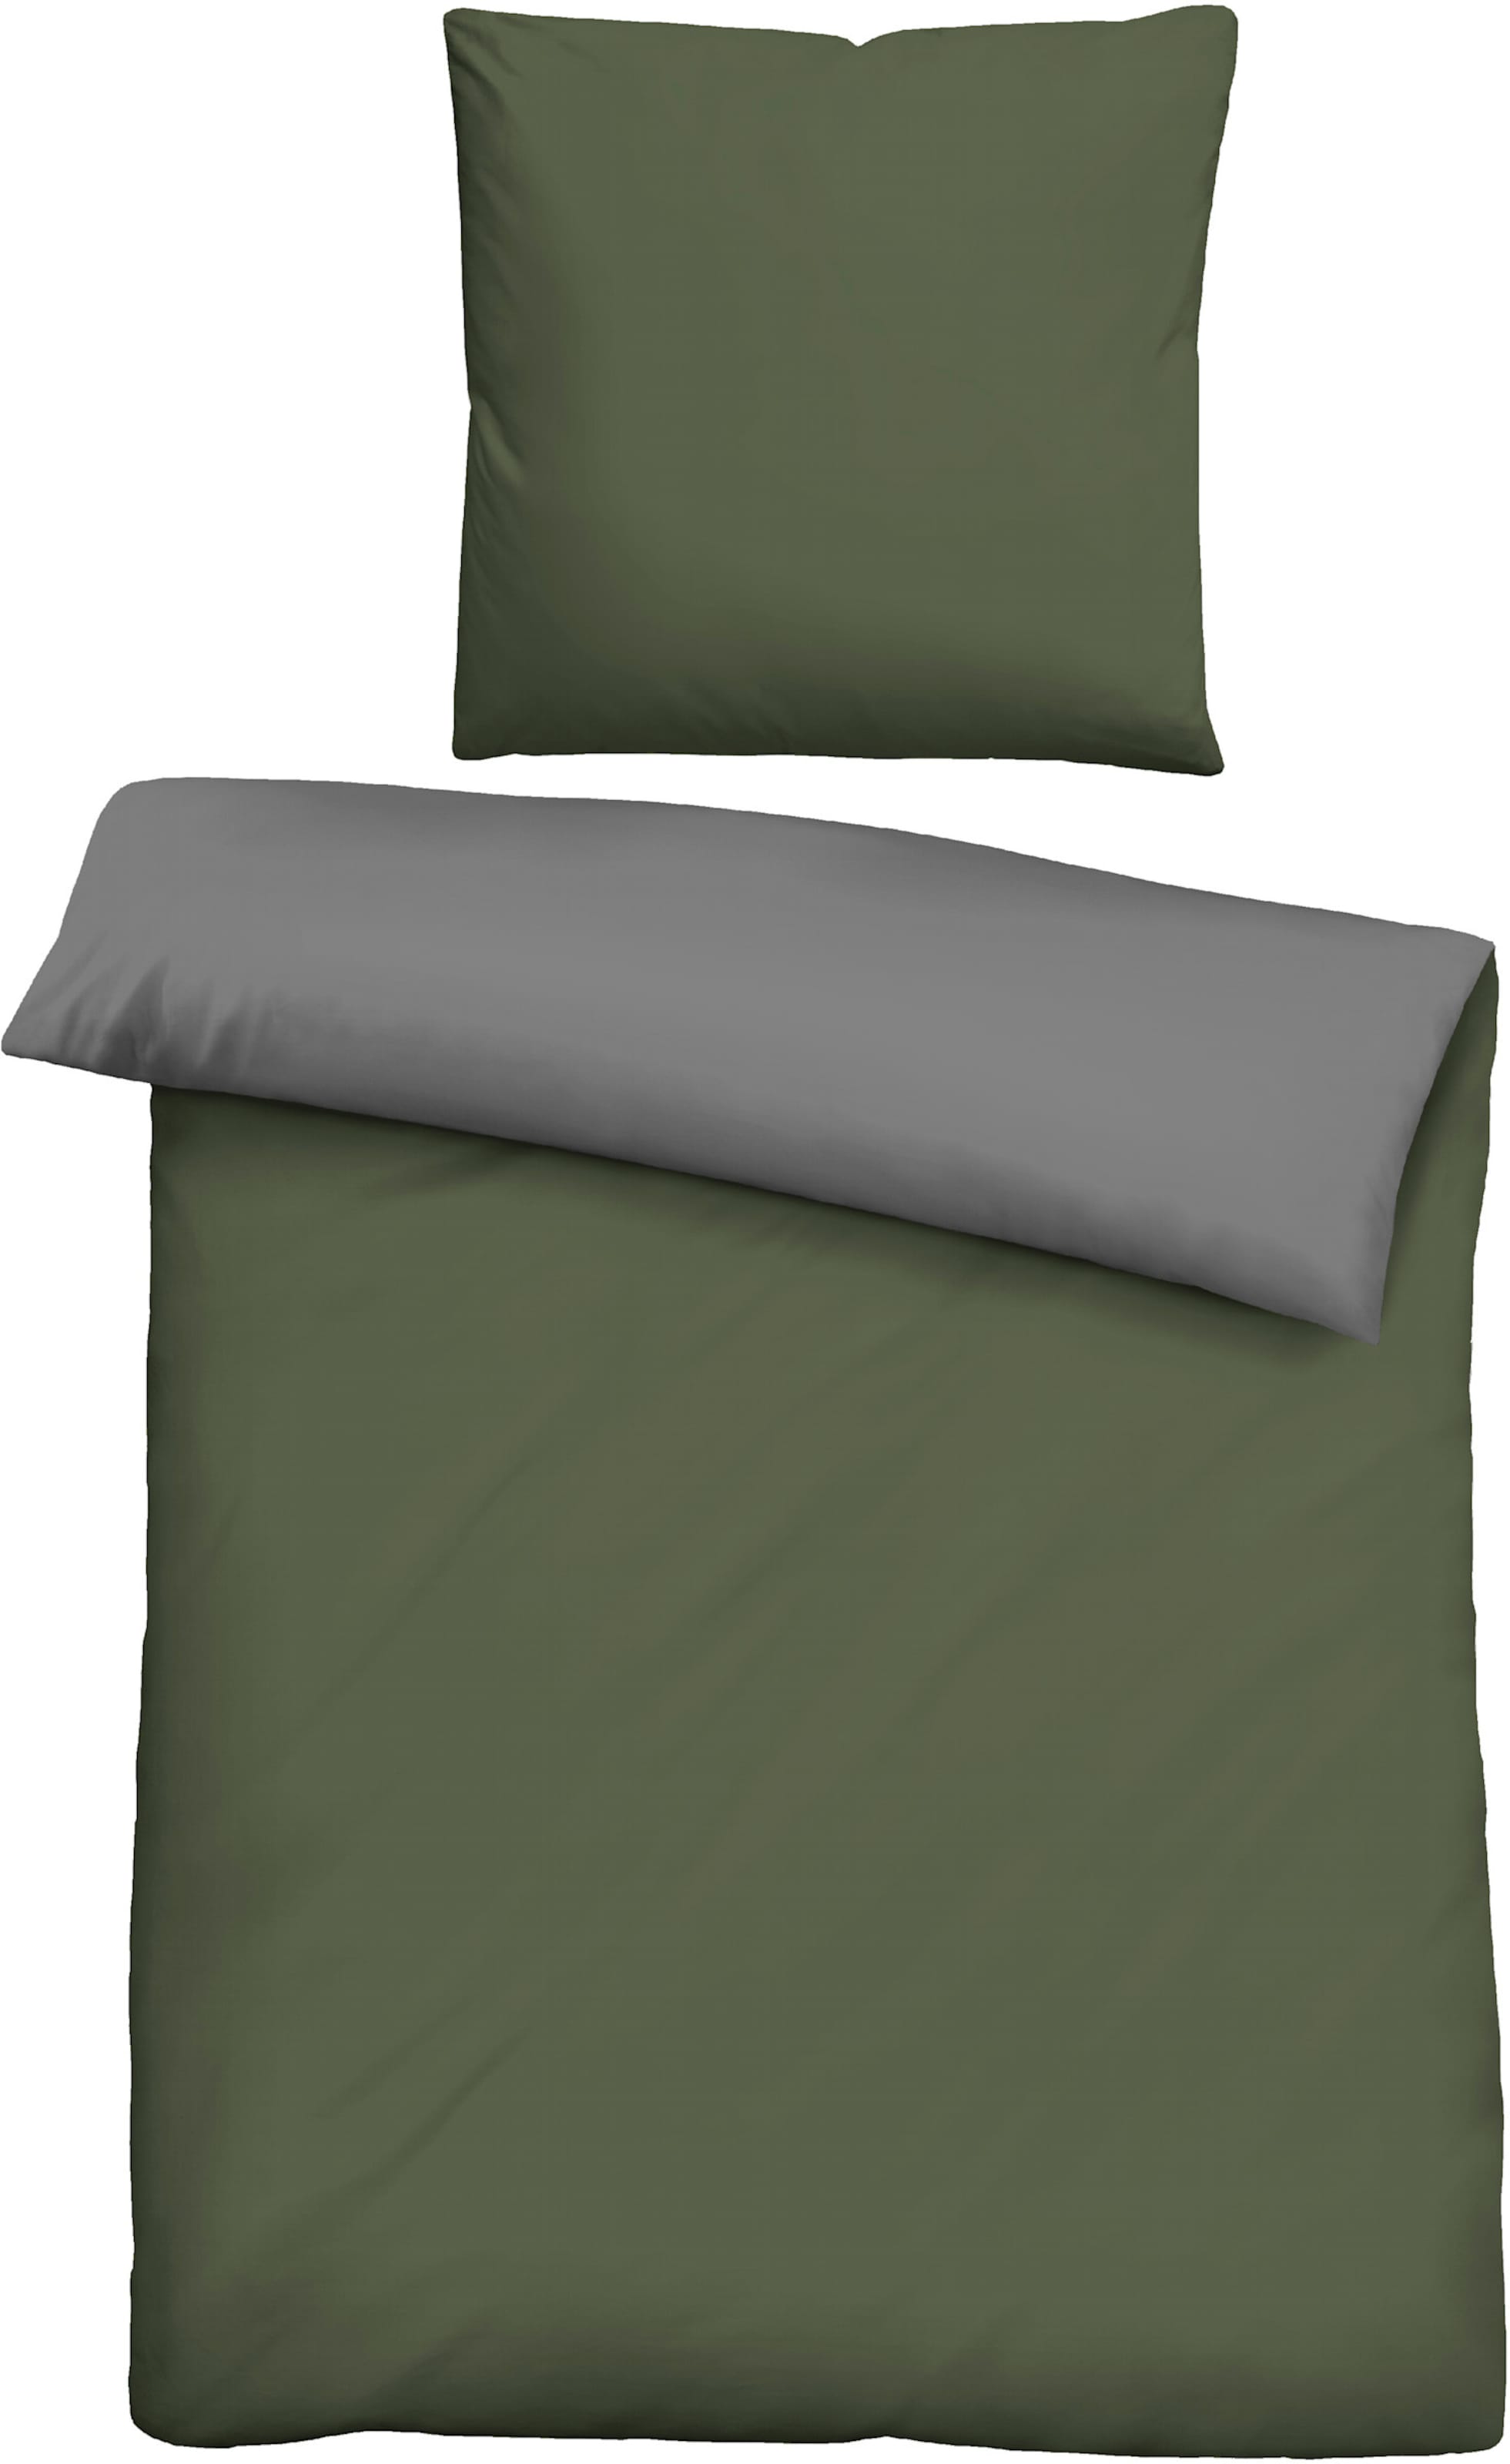 Strap on günstig Kaufen-Bettwäsche in grün-grau von Biberna. Bettwäsche in grün-grau von Biberna <![CDATA[Bettwäsche von BIBERNA. Moderne Wende-Bettwäsche in hochwertiger feinfädiger Linon-Qualität - hautsympathisch, atmungsaktiv und strapazierfähig. Sch